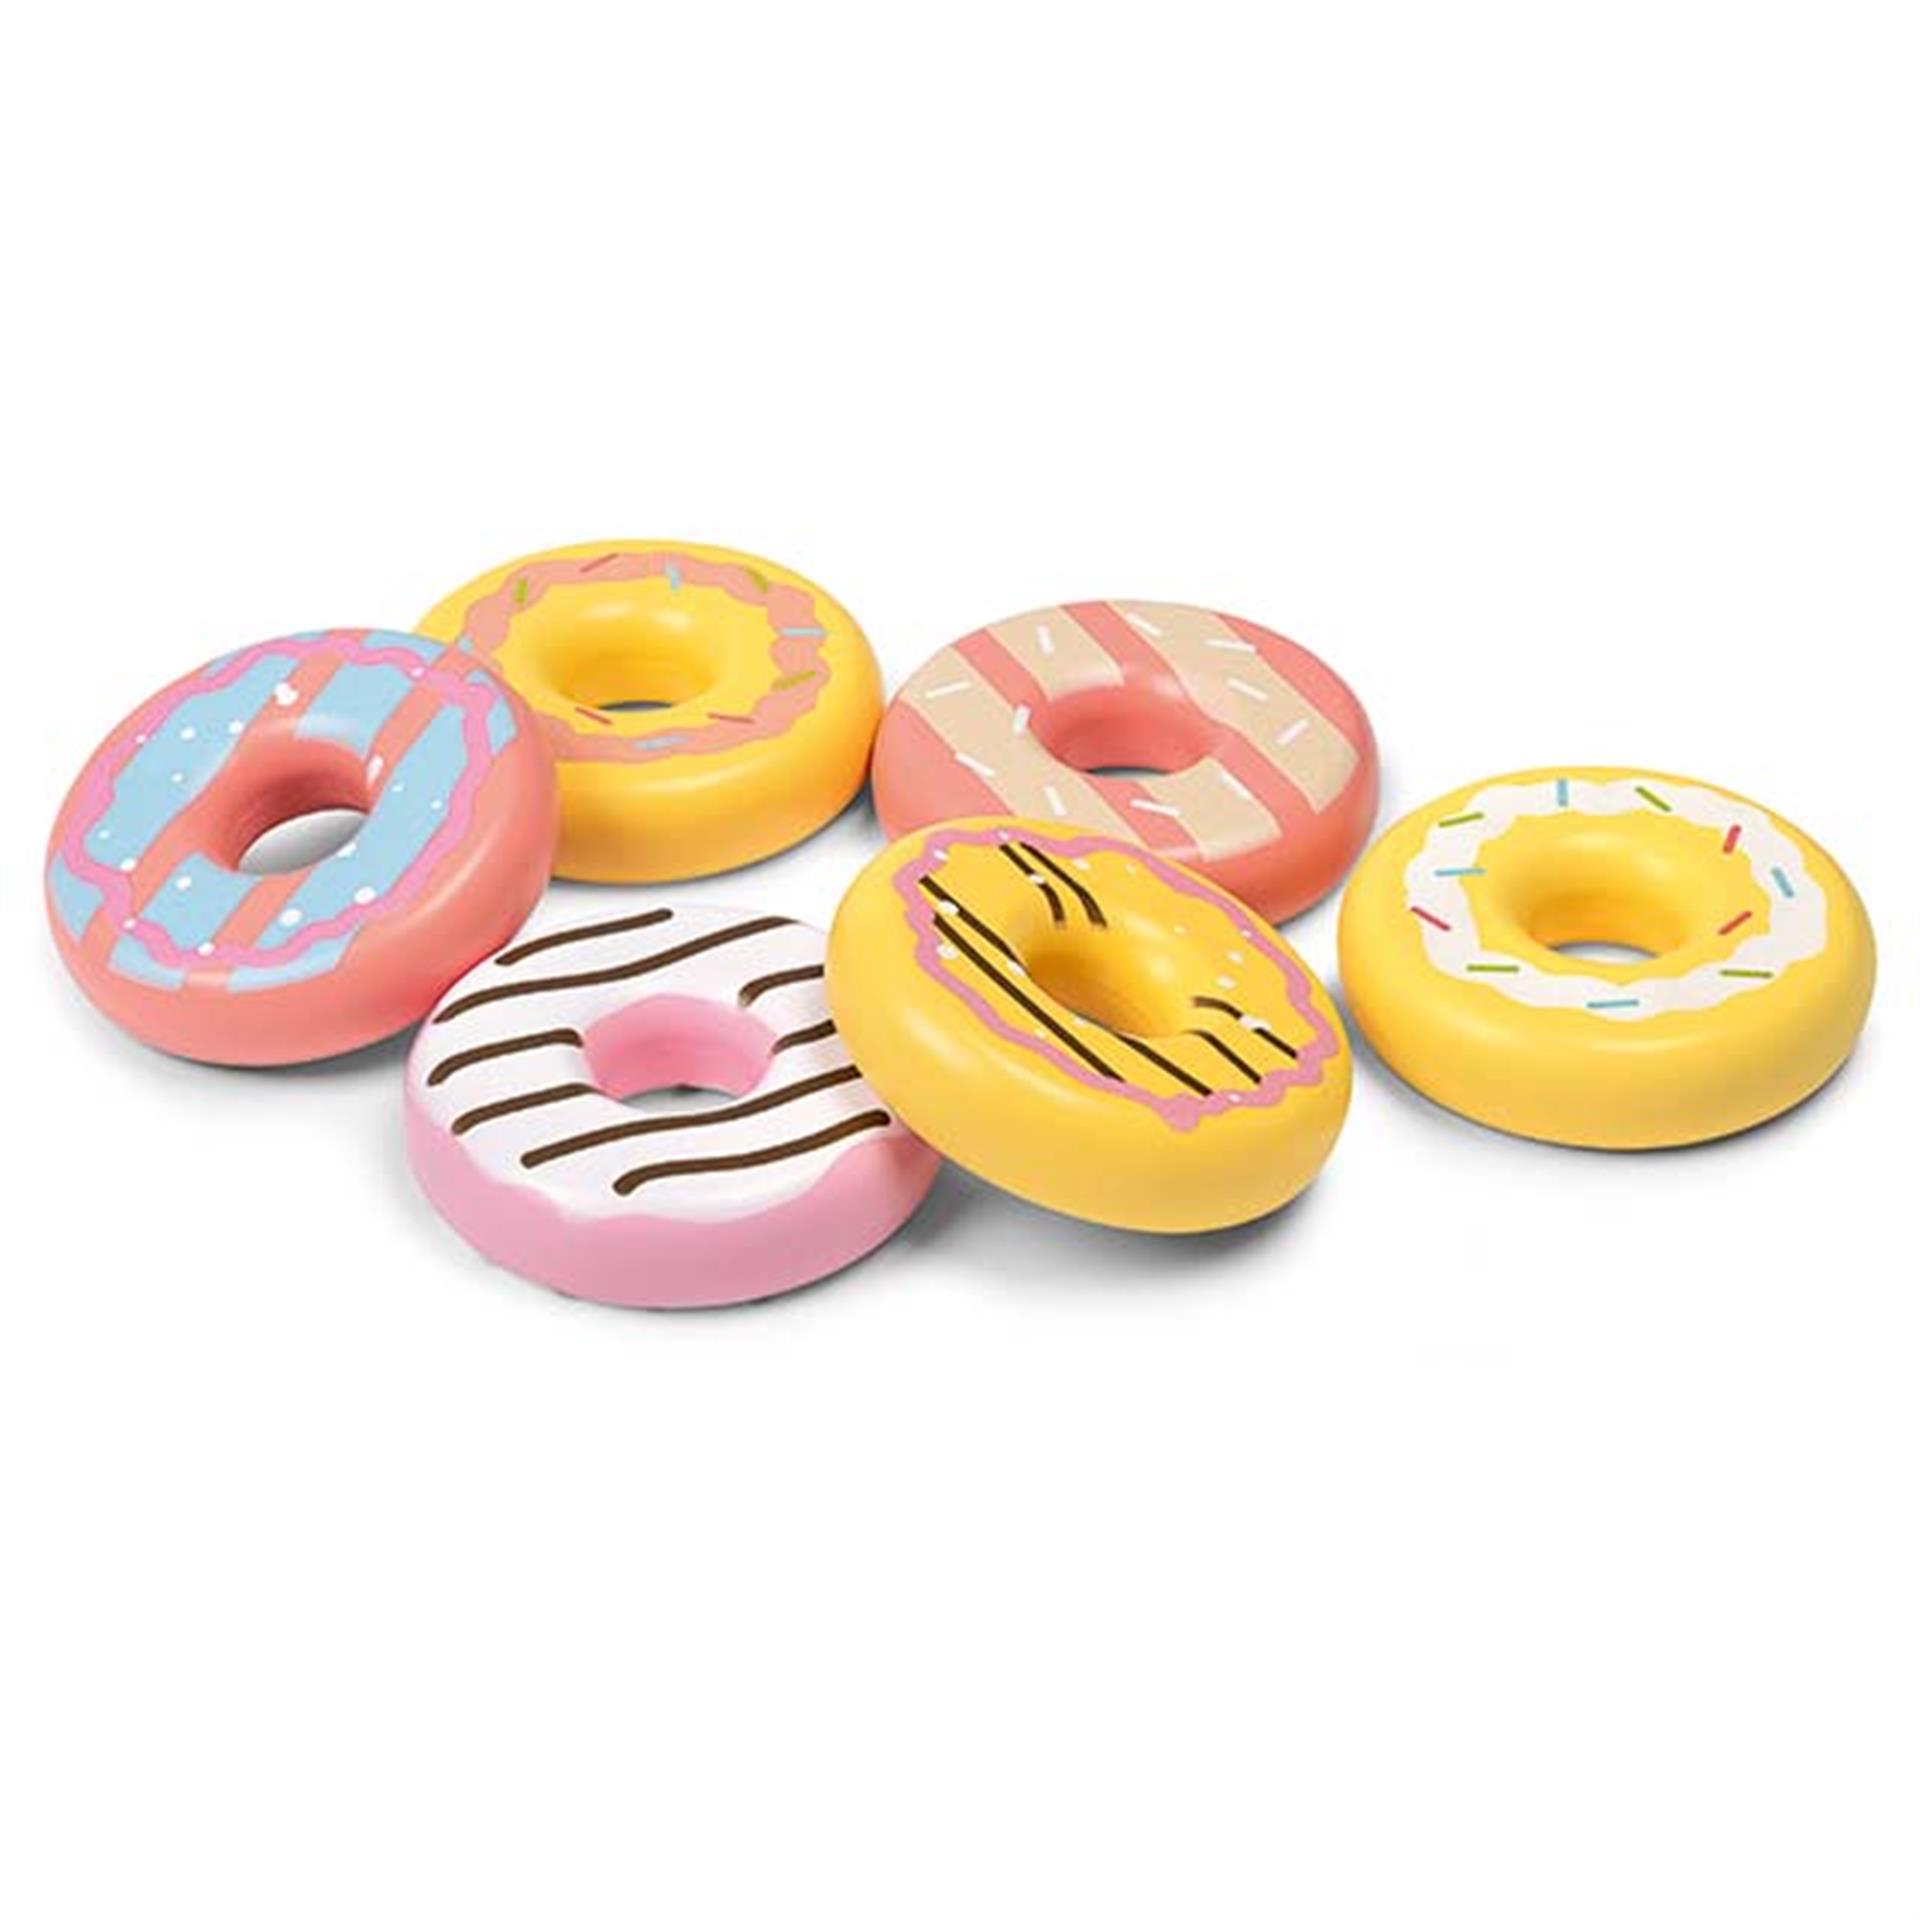 Doughnuts-giocattolo in legno, 6 pezzi